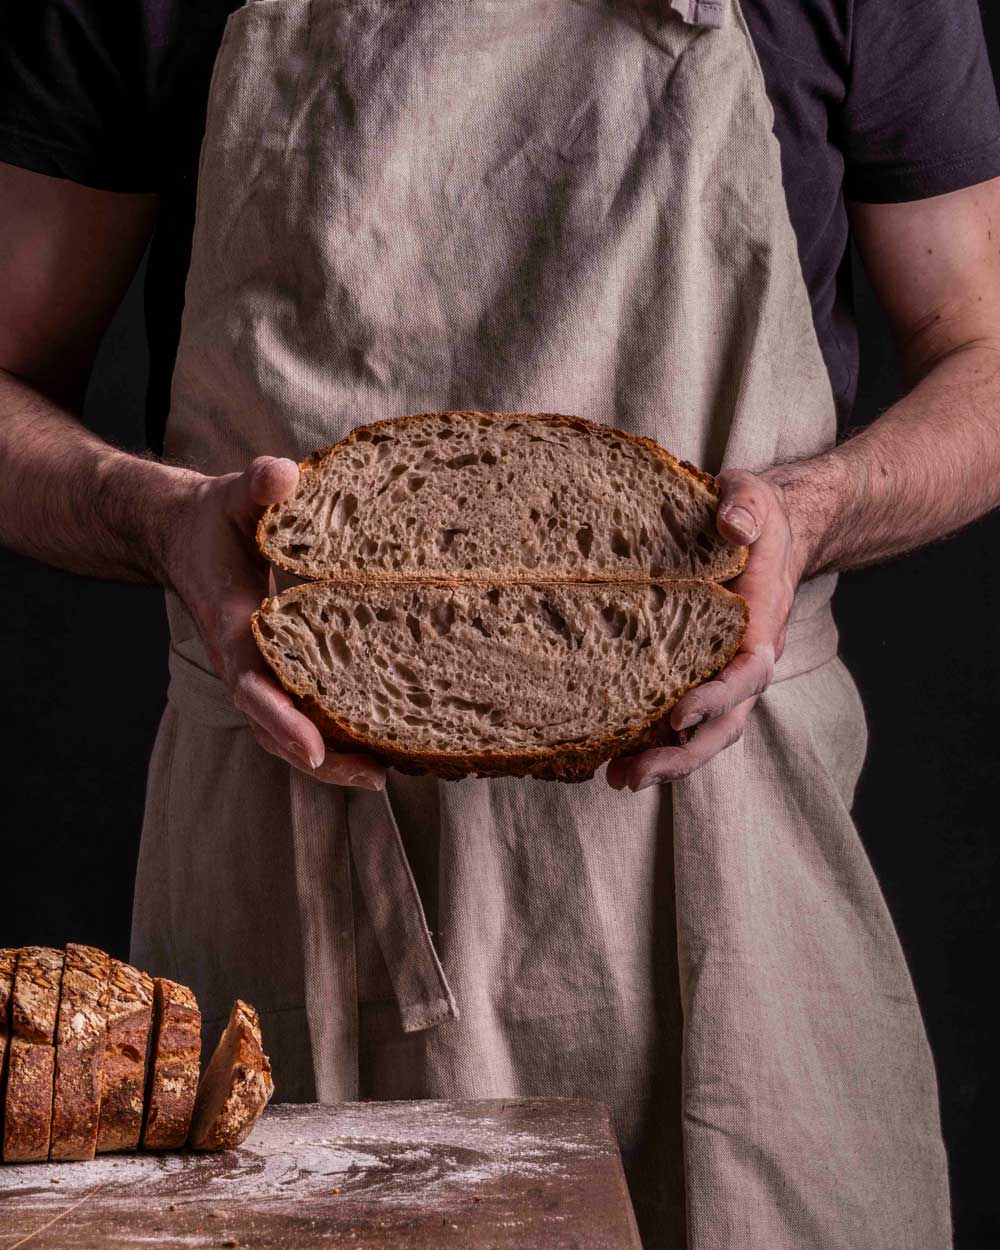 Cru bakker met vers brood in handen